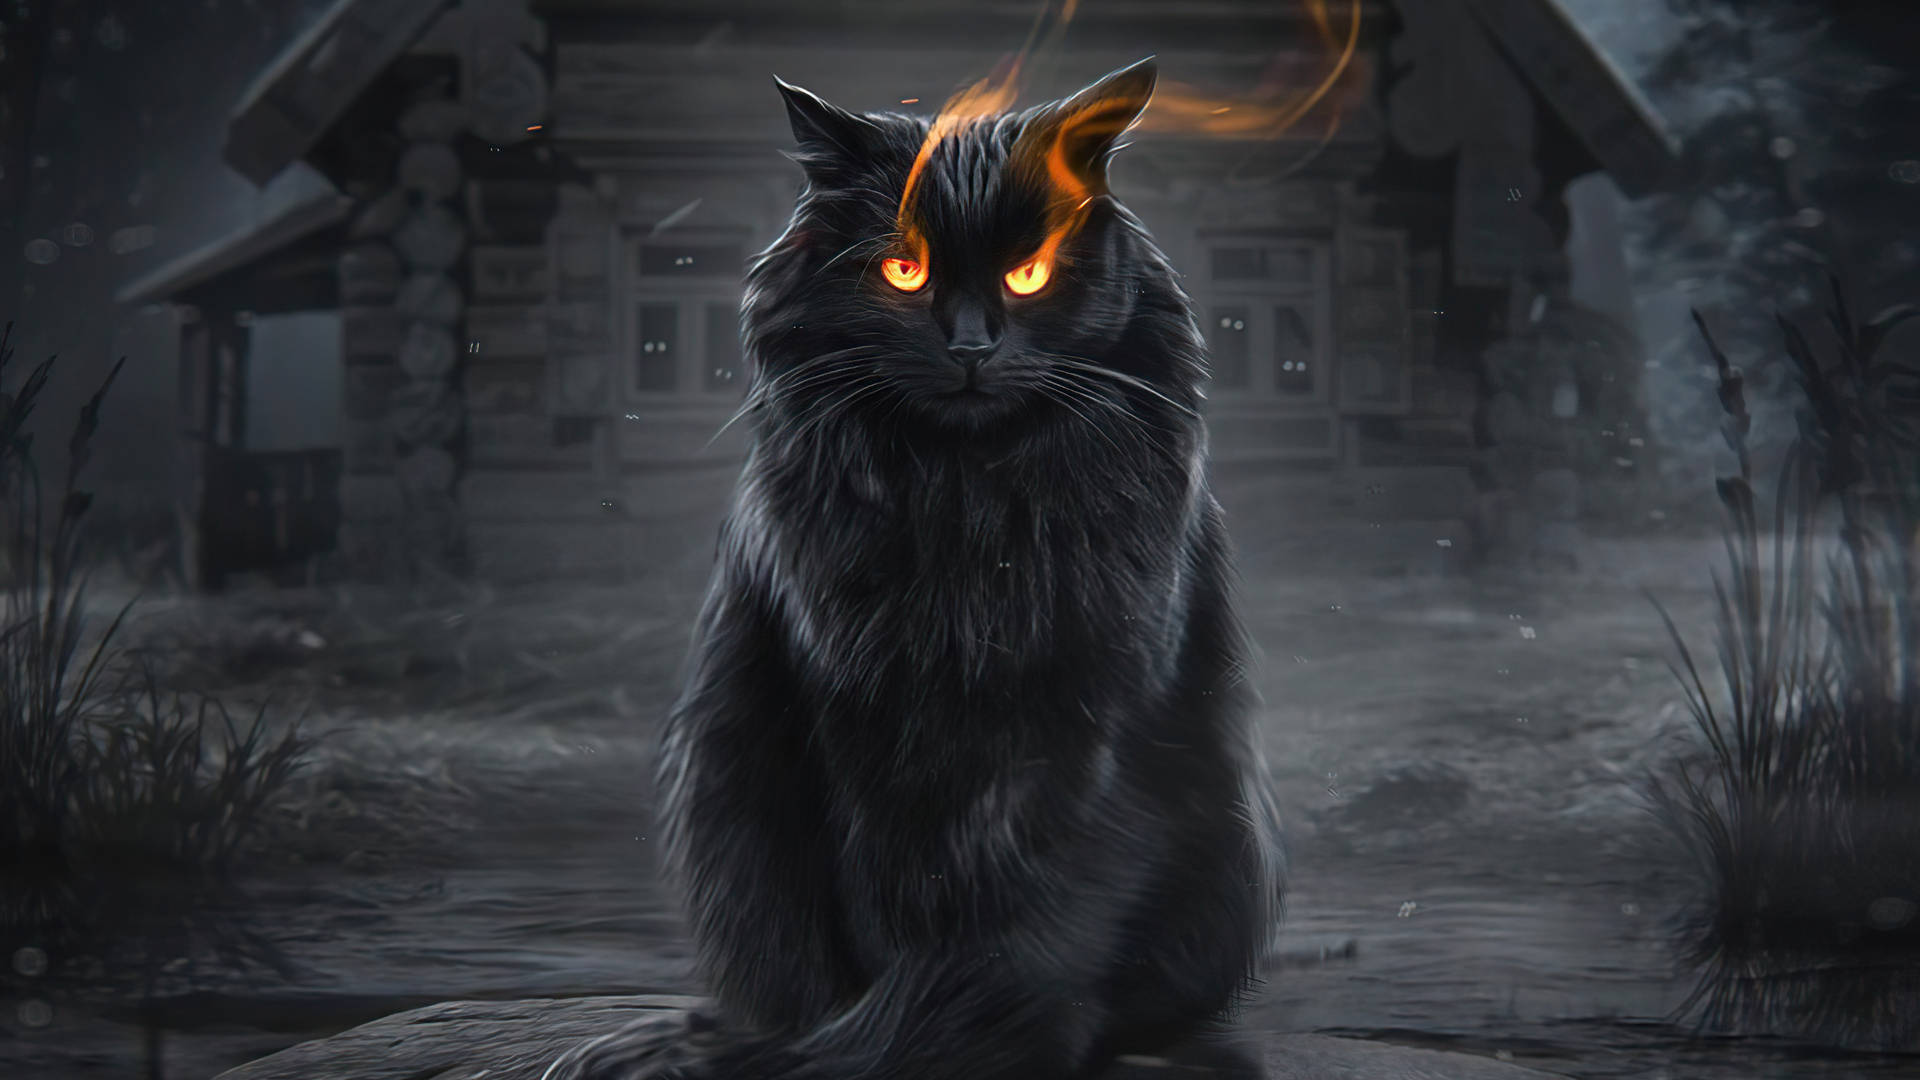 1920x1080 Hd Cat Fiery Eyes Background